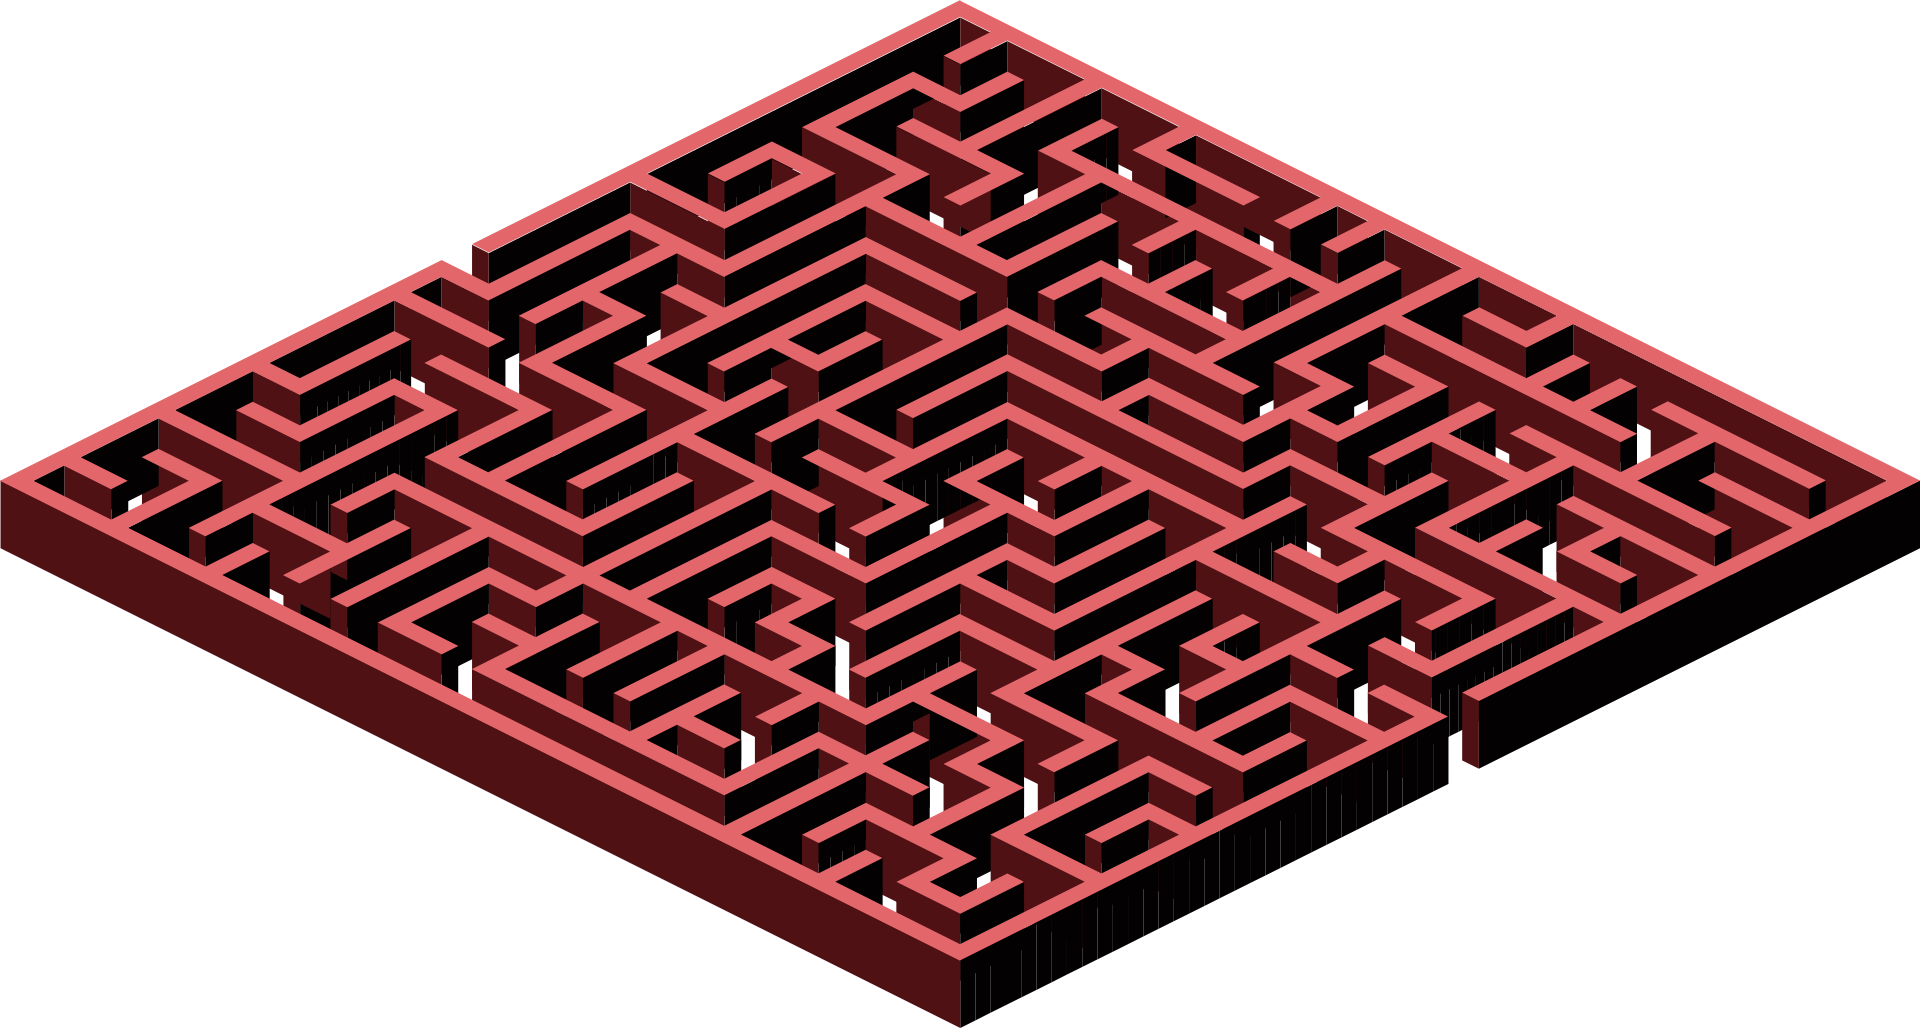 Red Maze